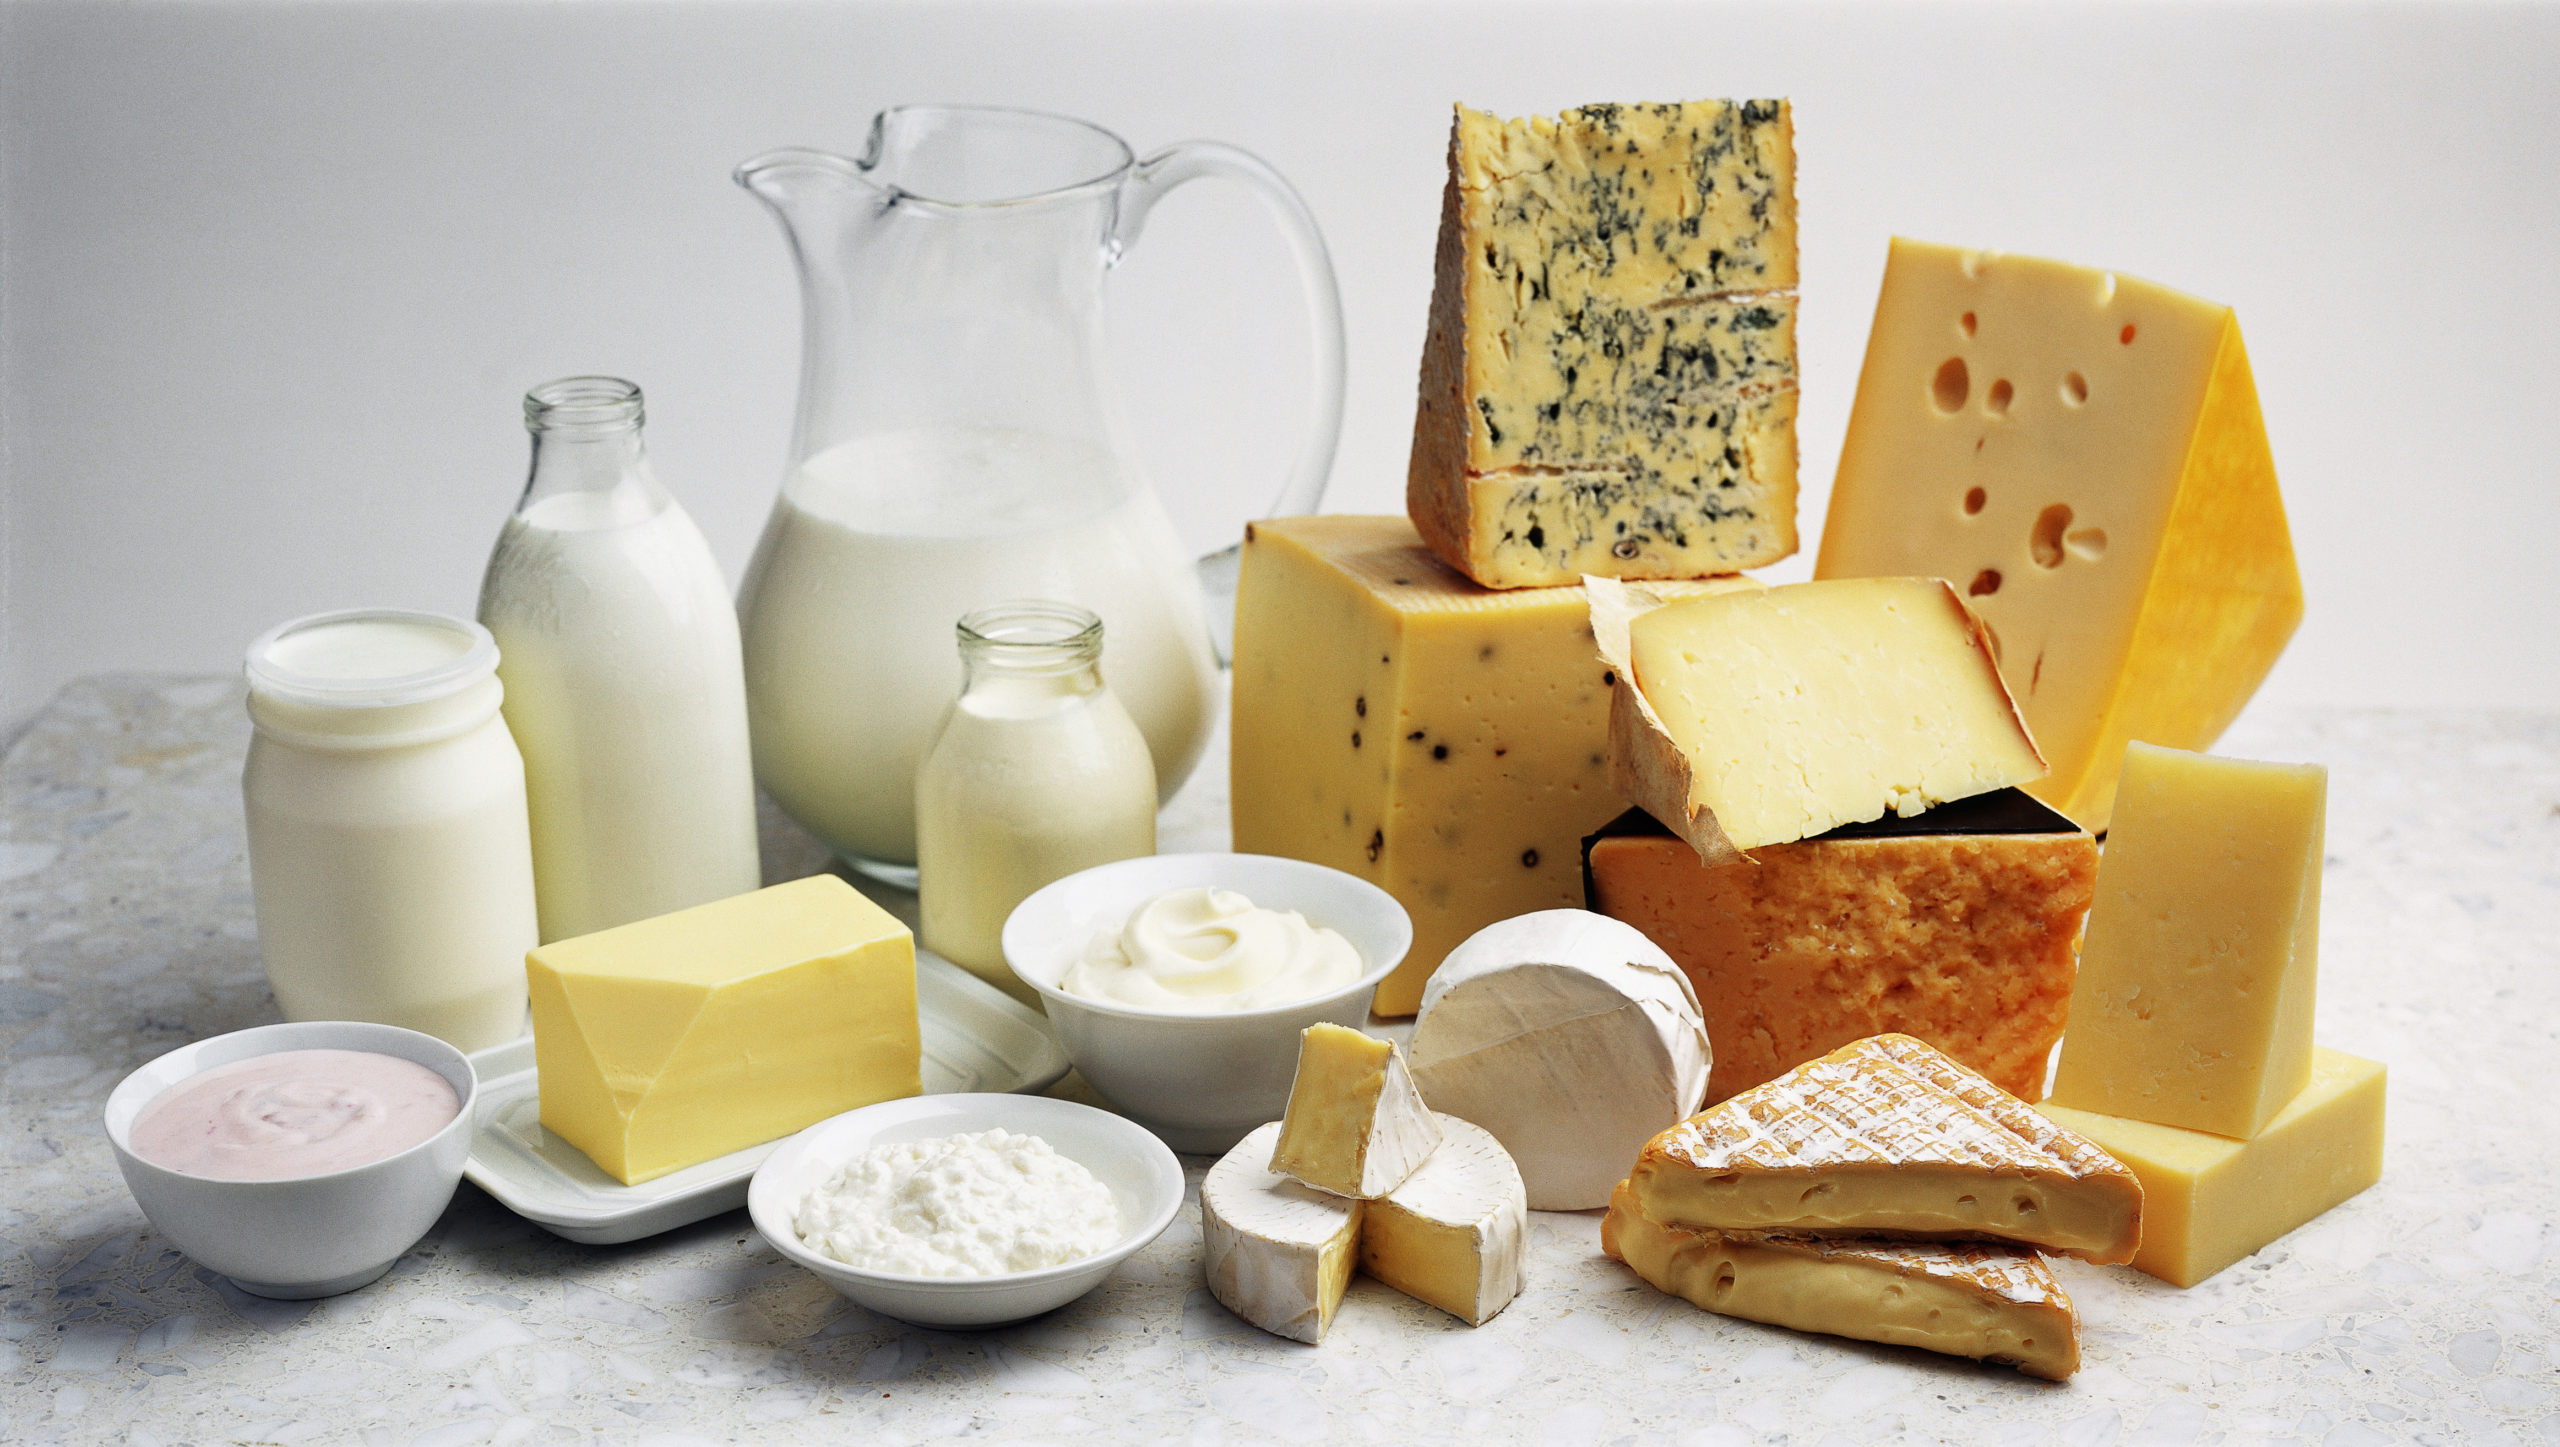 Australian Cheesemaker - Dairy Australia